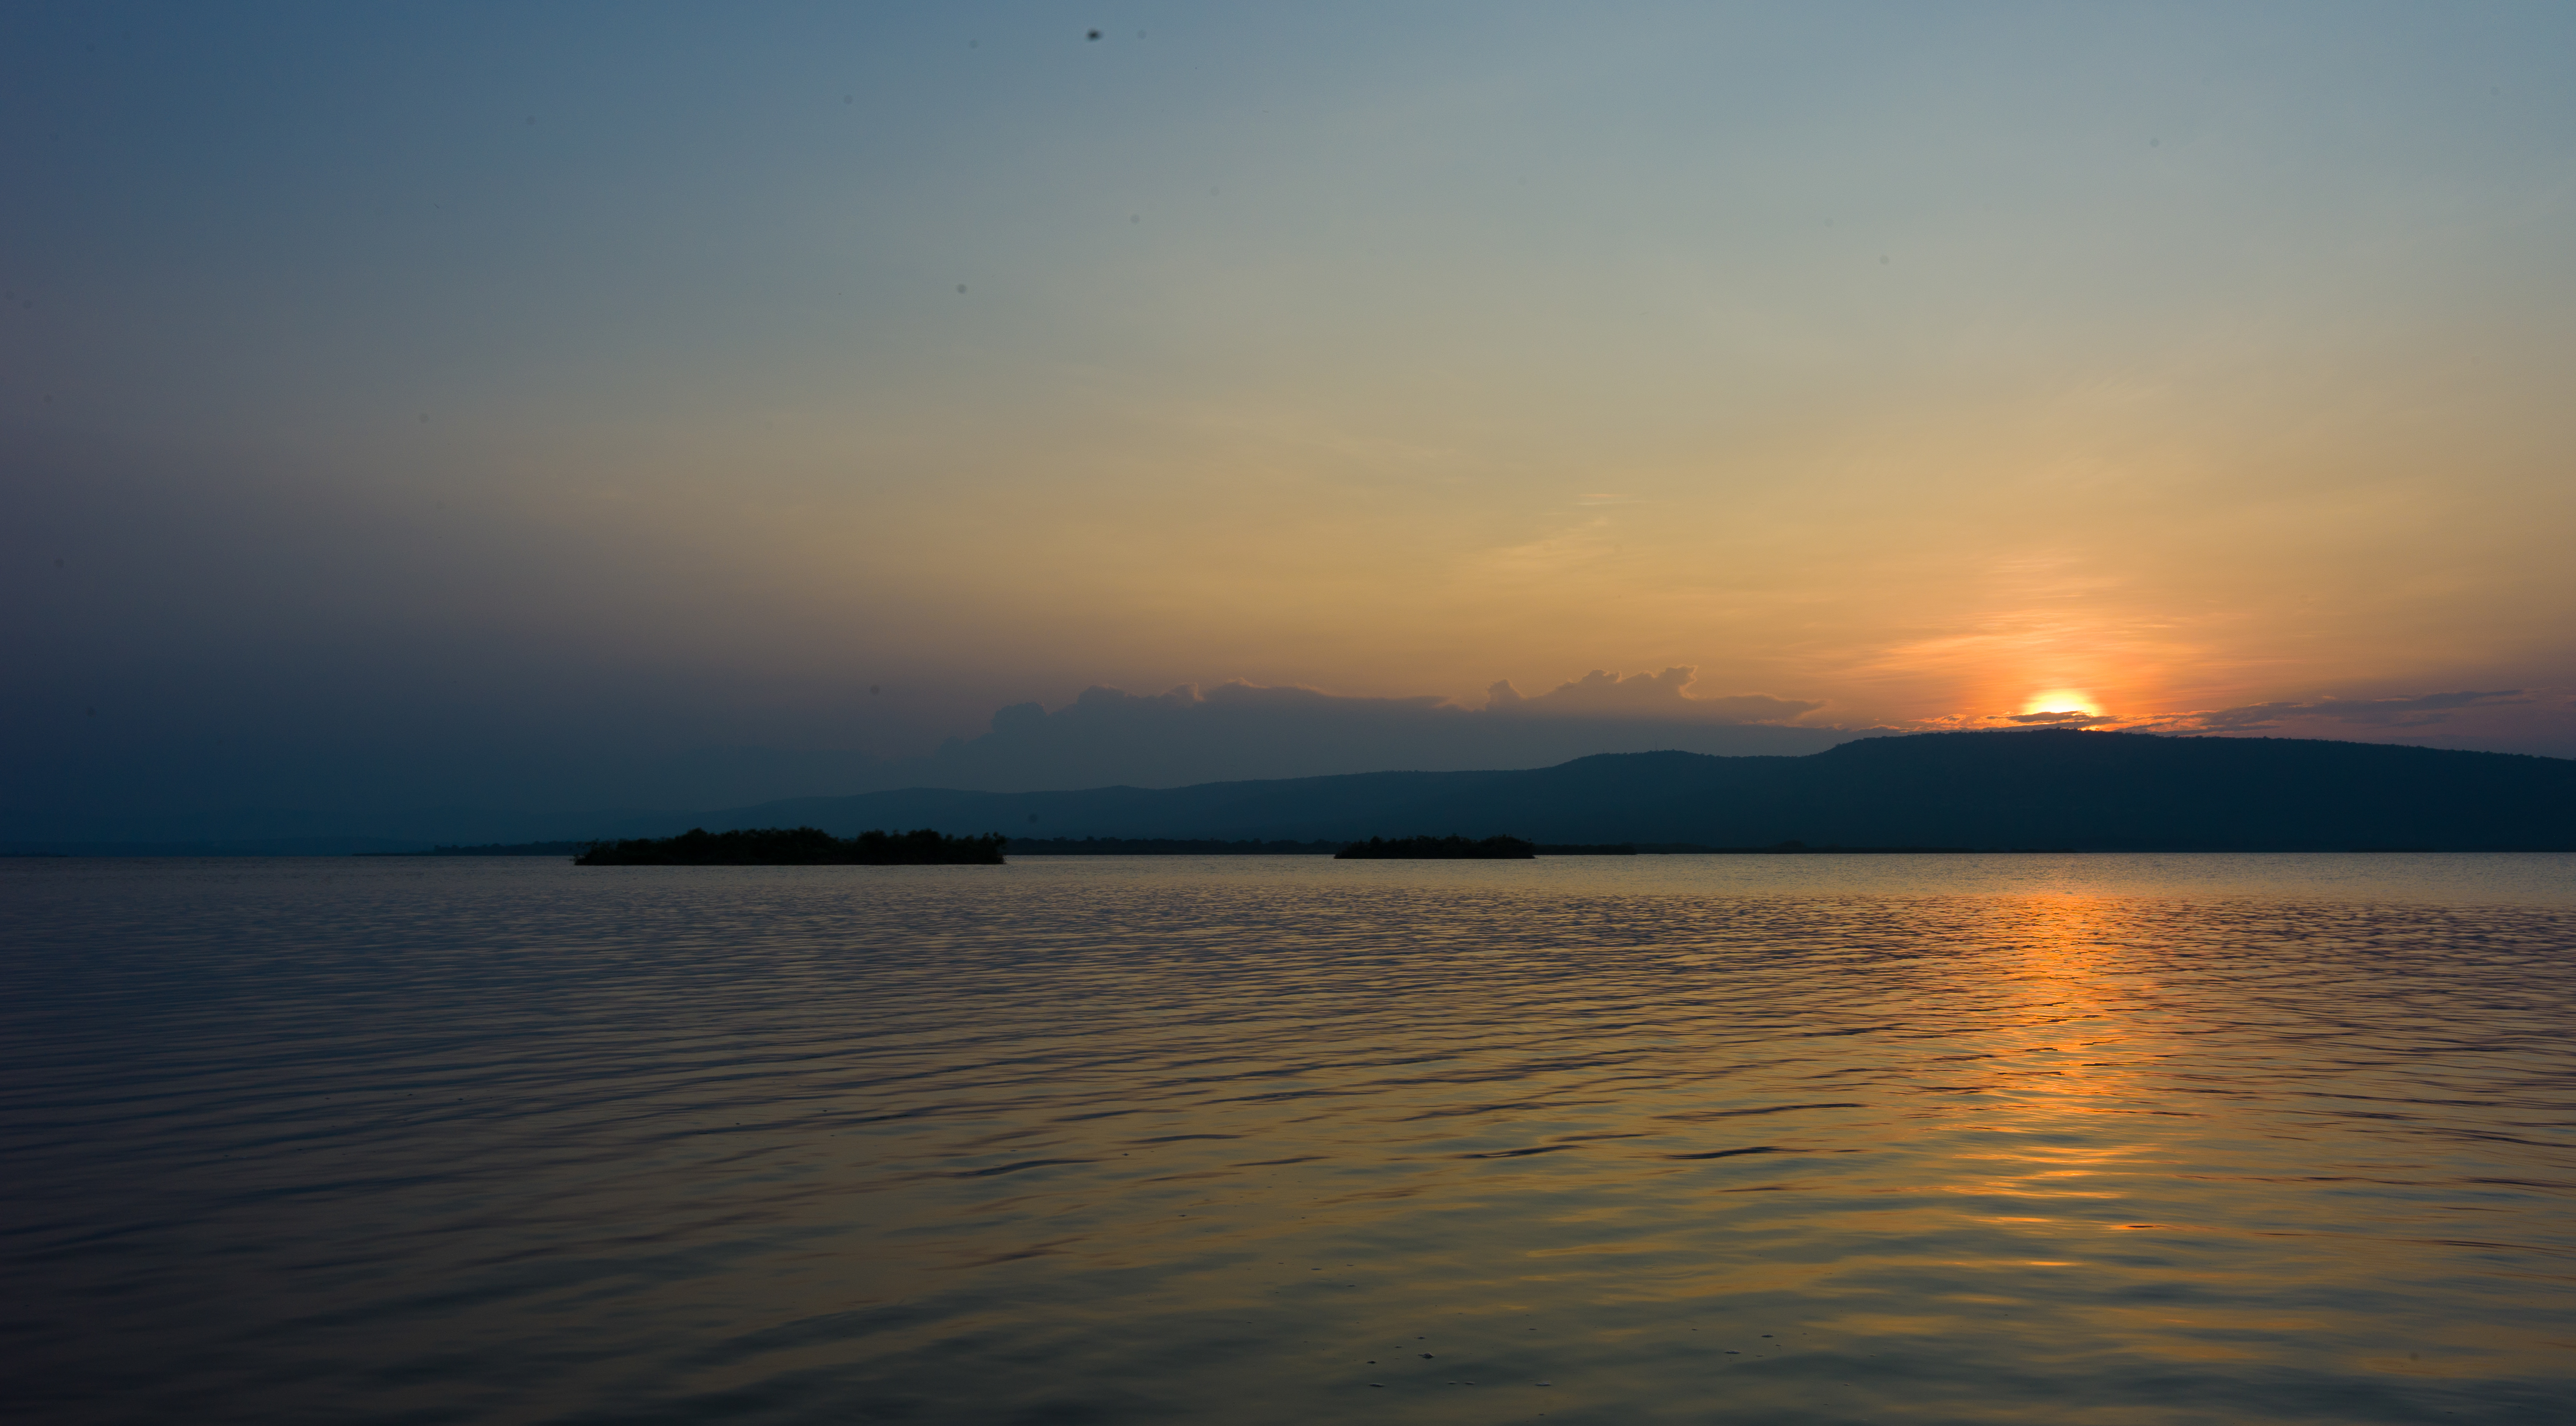 Sunset over an Akagera lake